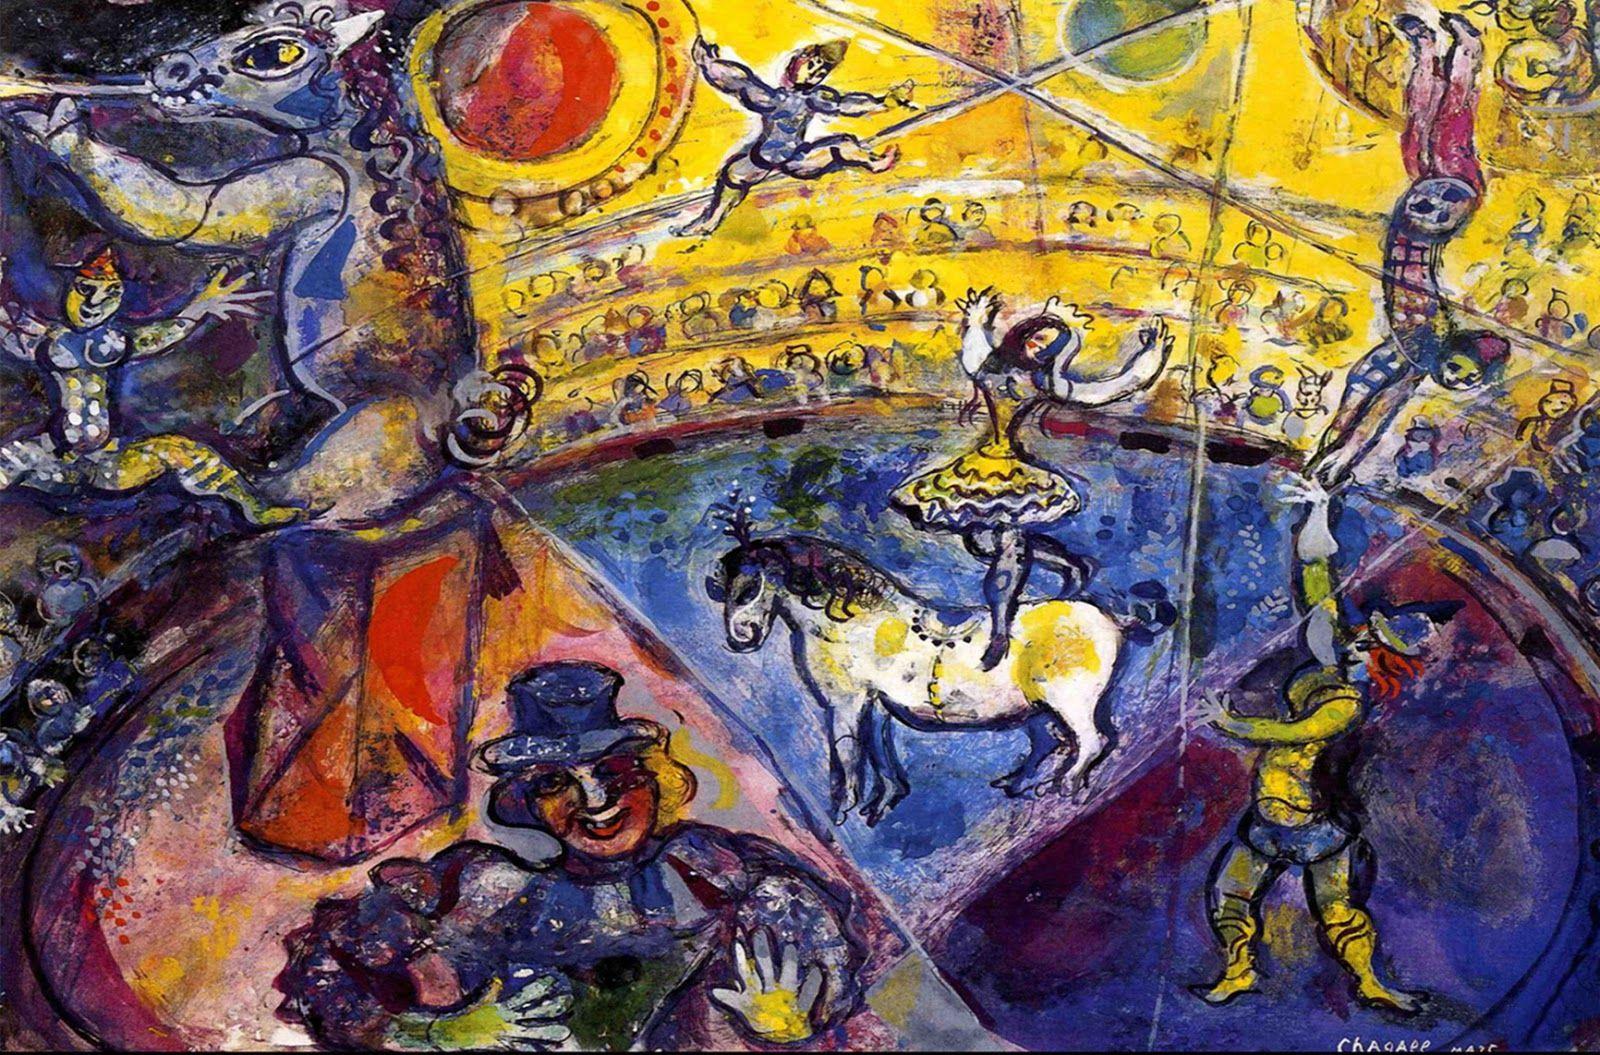 والپیپر اثر مارک شاگال به نام اسب سیرک در کیفیت بالا 